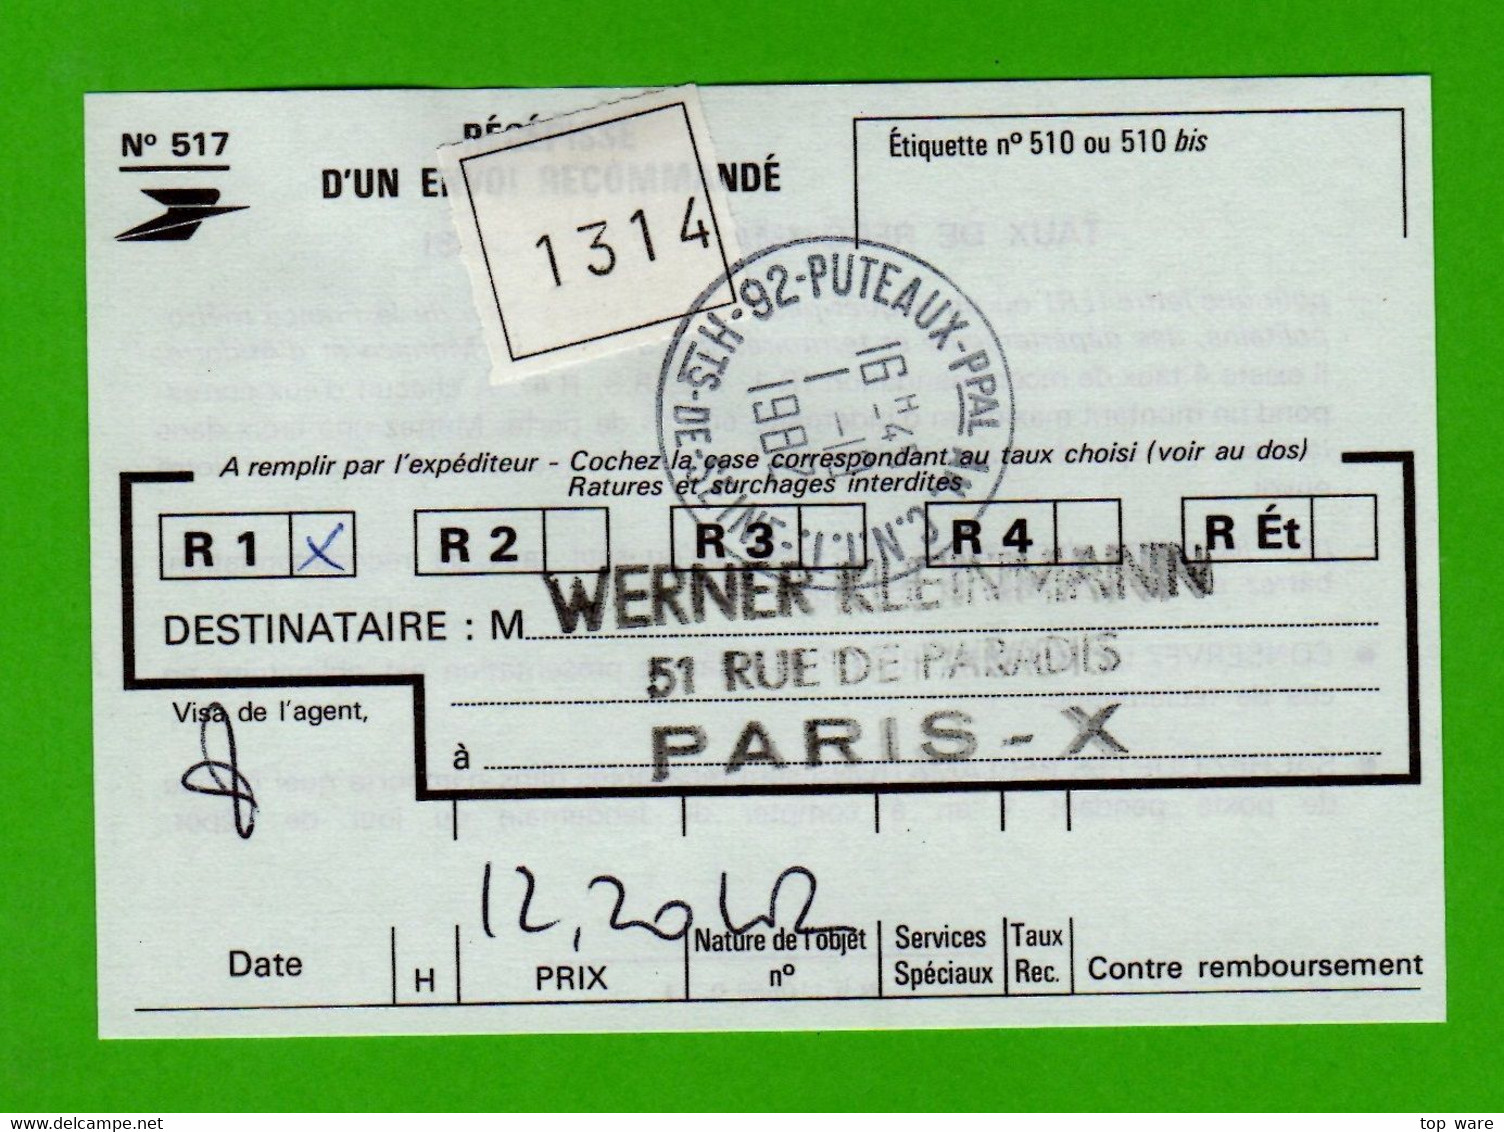 France ATM Vignette LSA 92954 / Michel 5.2 / Satz Auf R-LDC / SICOB 1982 / Distributeurs Automatenmarken - 1981-84 LS & LSA Prototypes